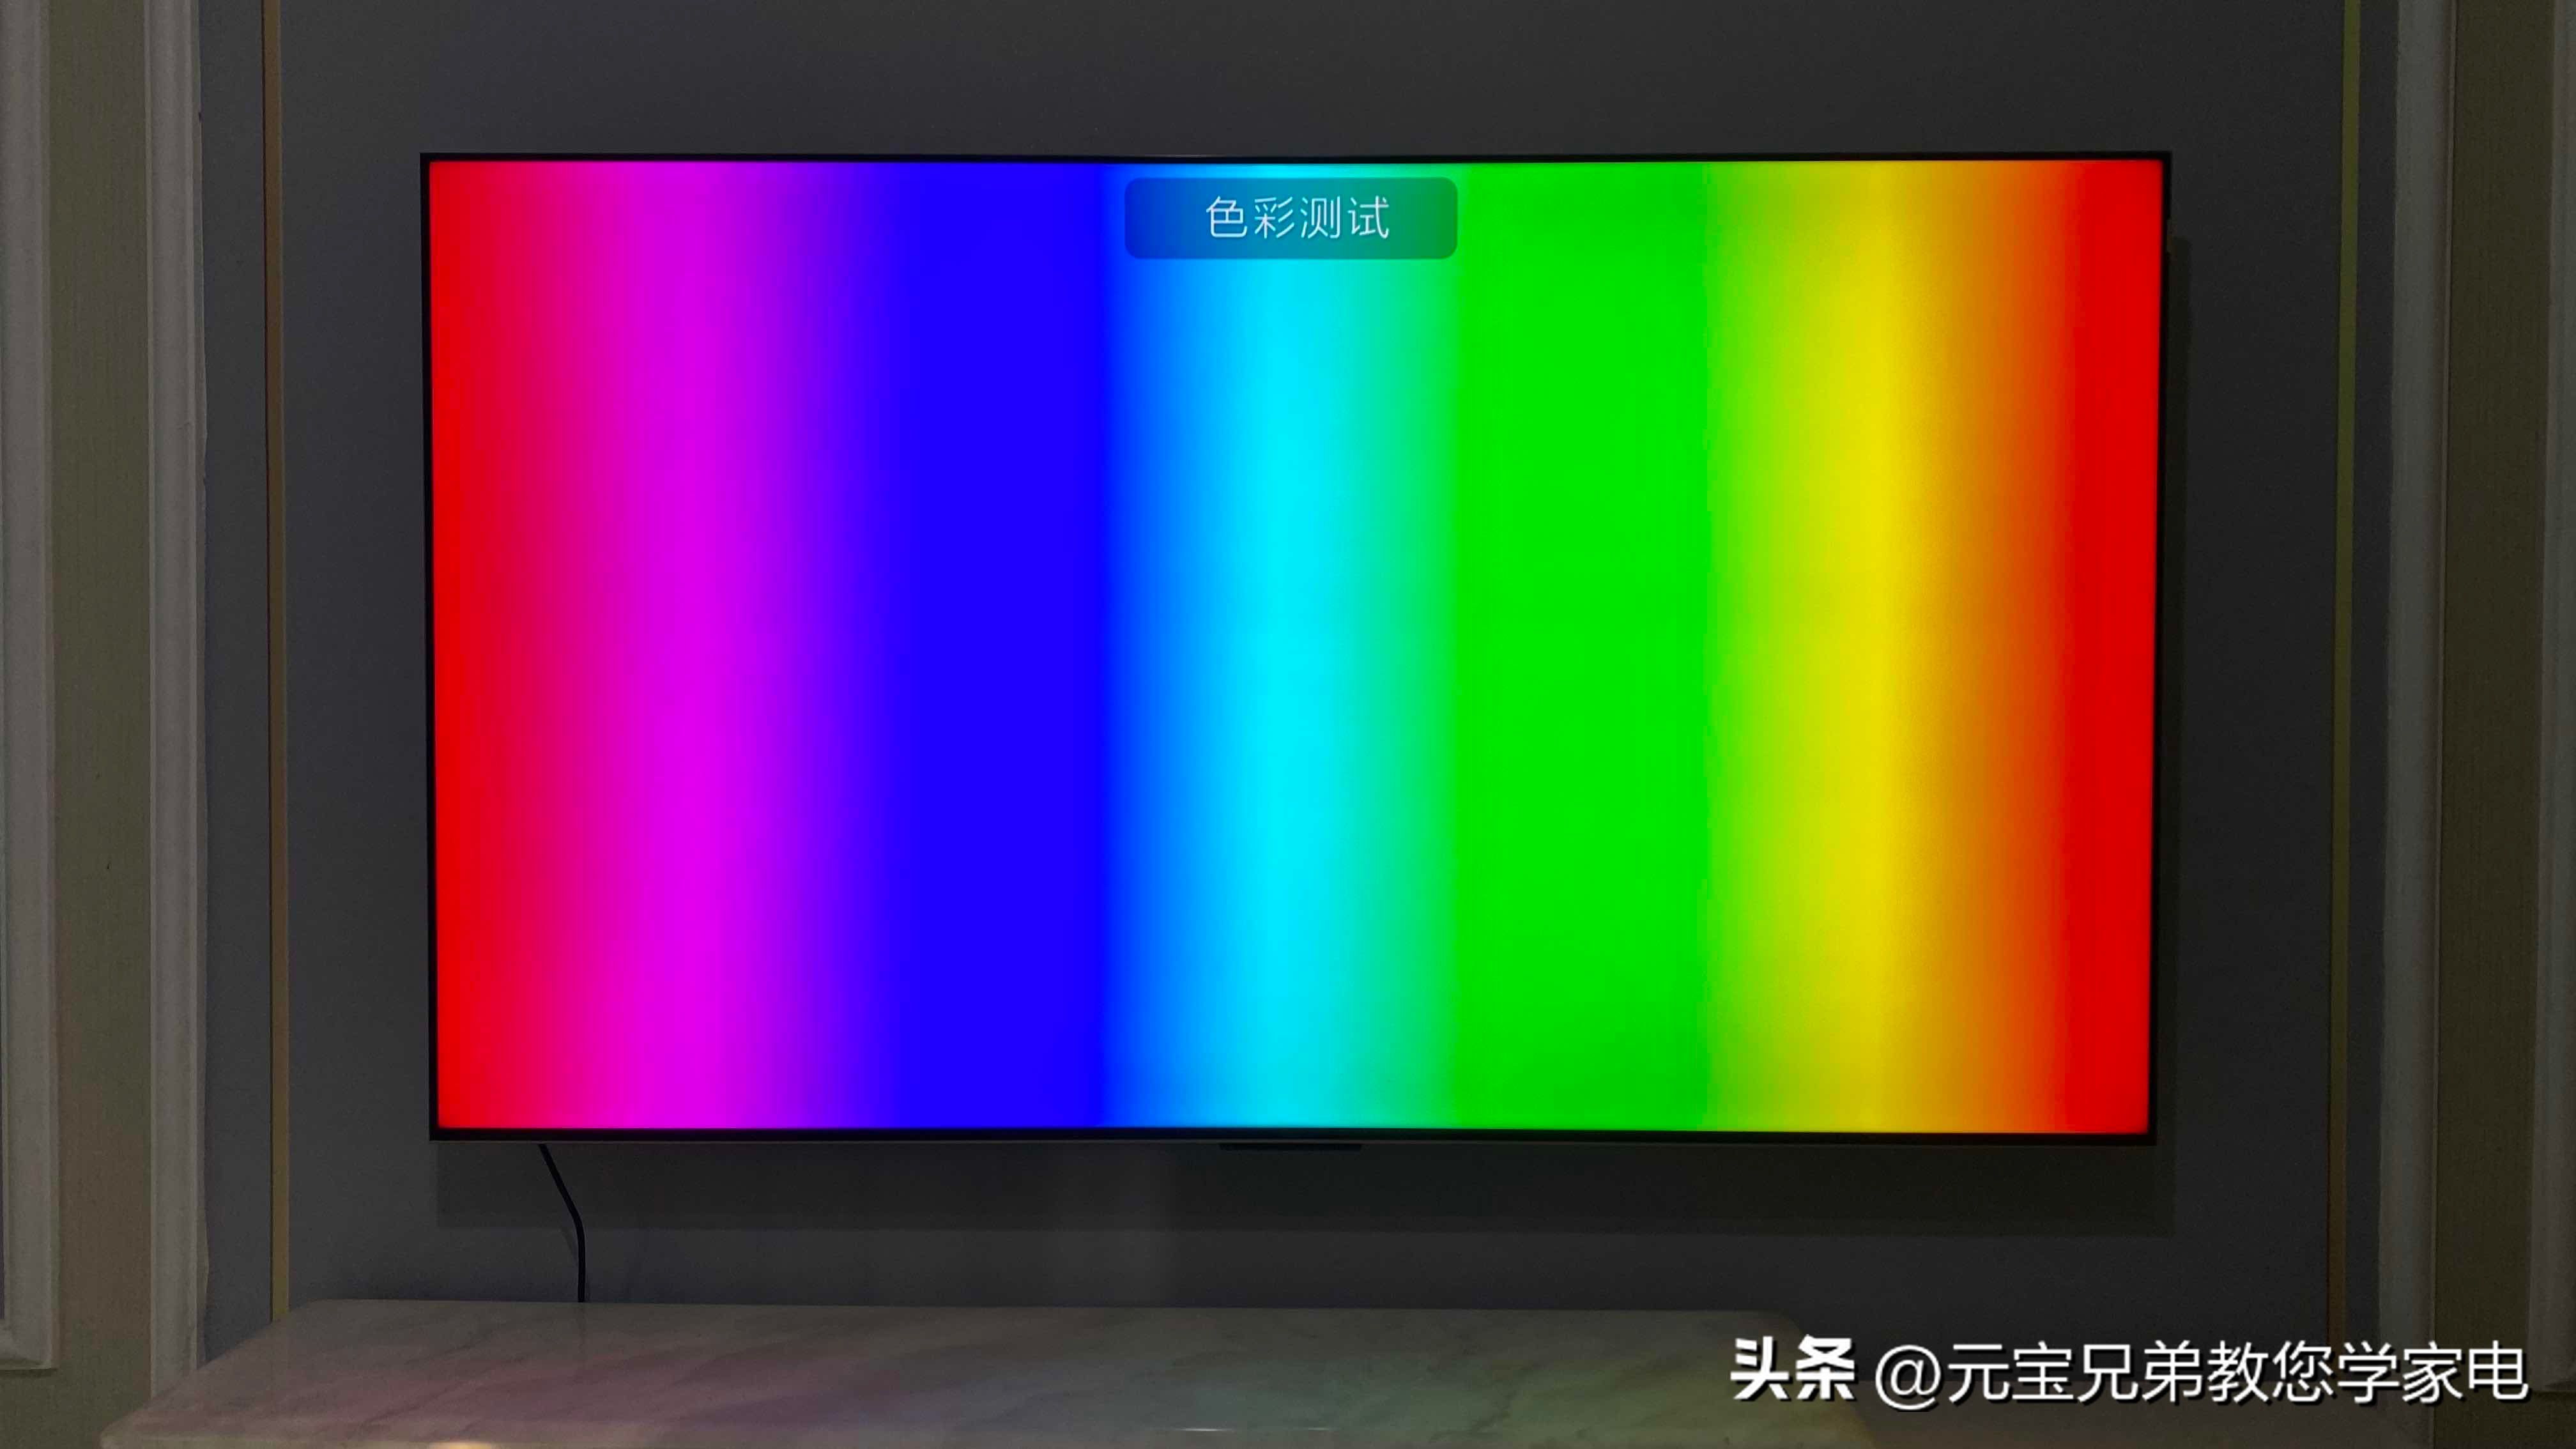 3D智能电视机的色彩效果如何？体验全方位立体视觉盛宴！